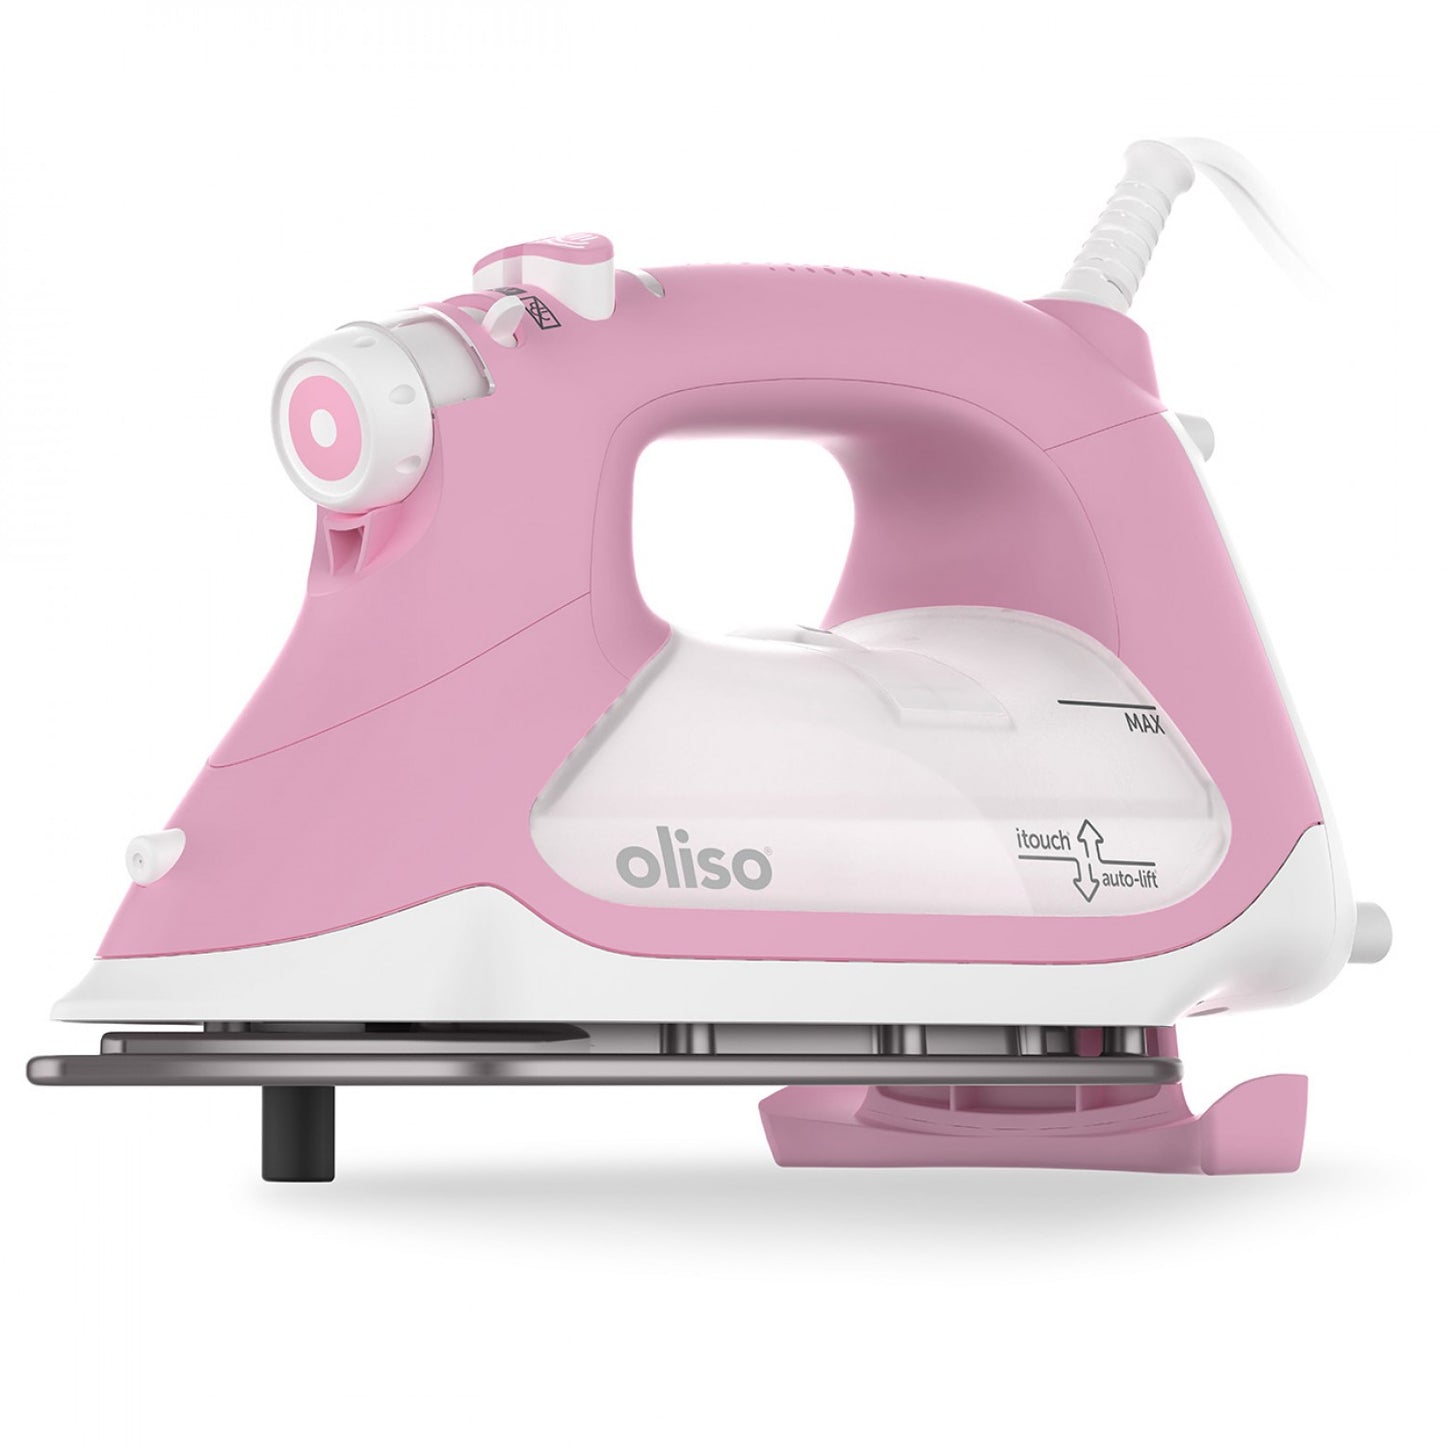 Oliso - TG1600 ProPlus Smart Iron (Pink)